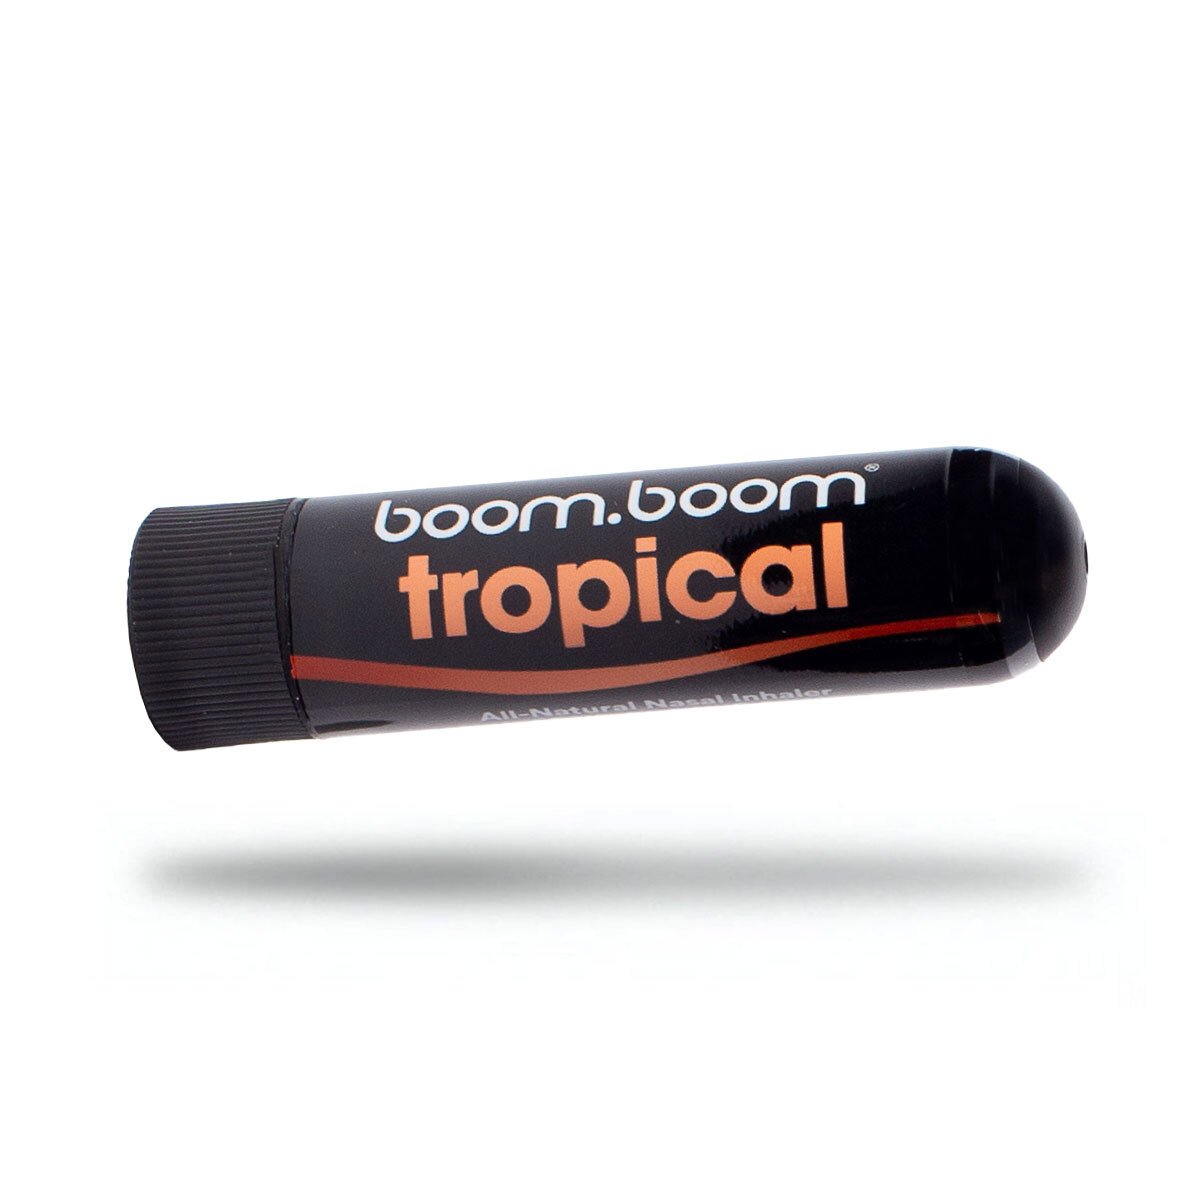 Tropical BoomBoom Nasal Inhaler - Rave Wonderland